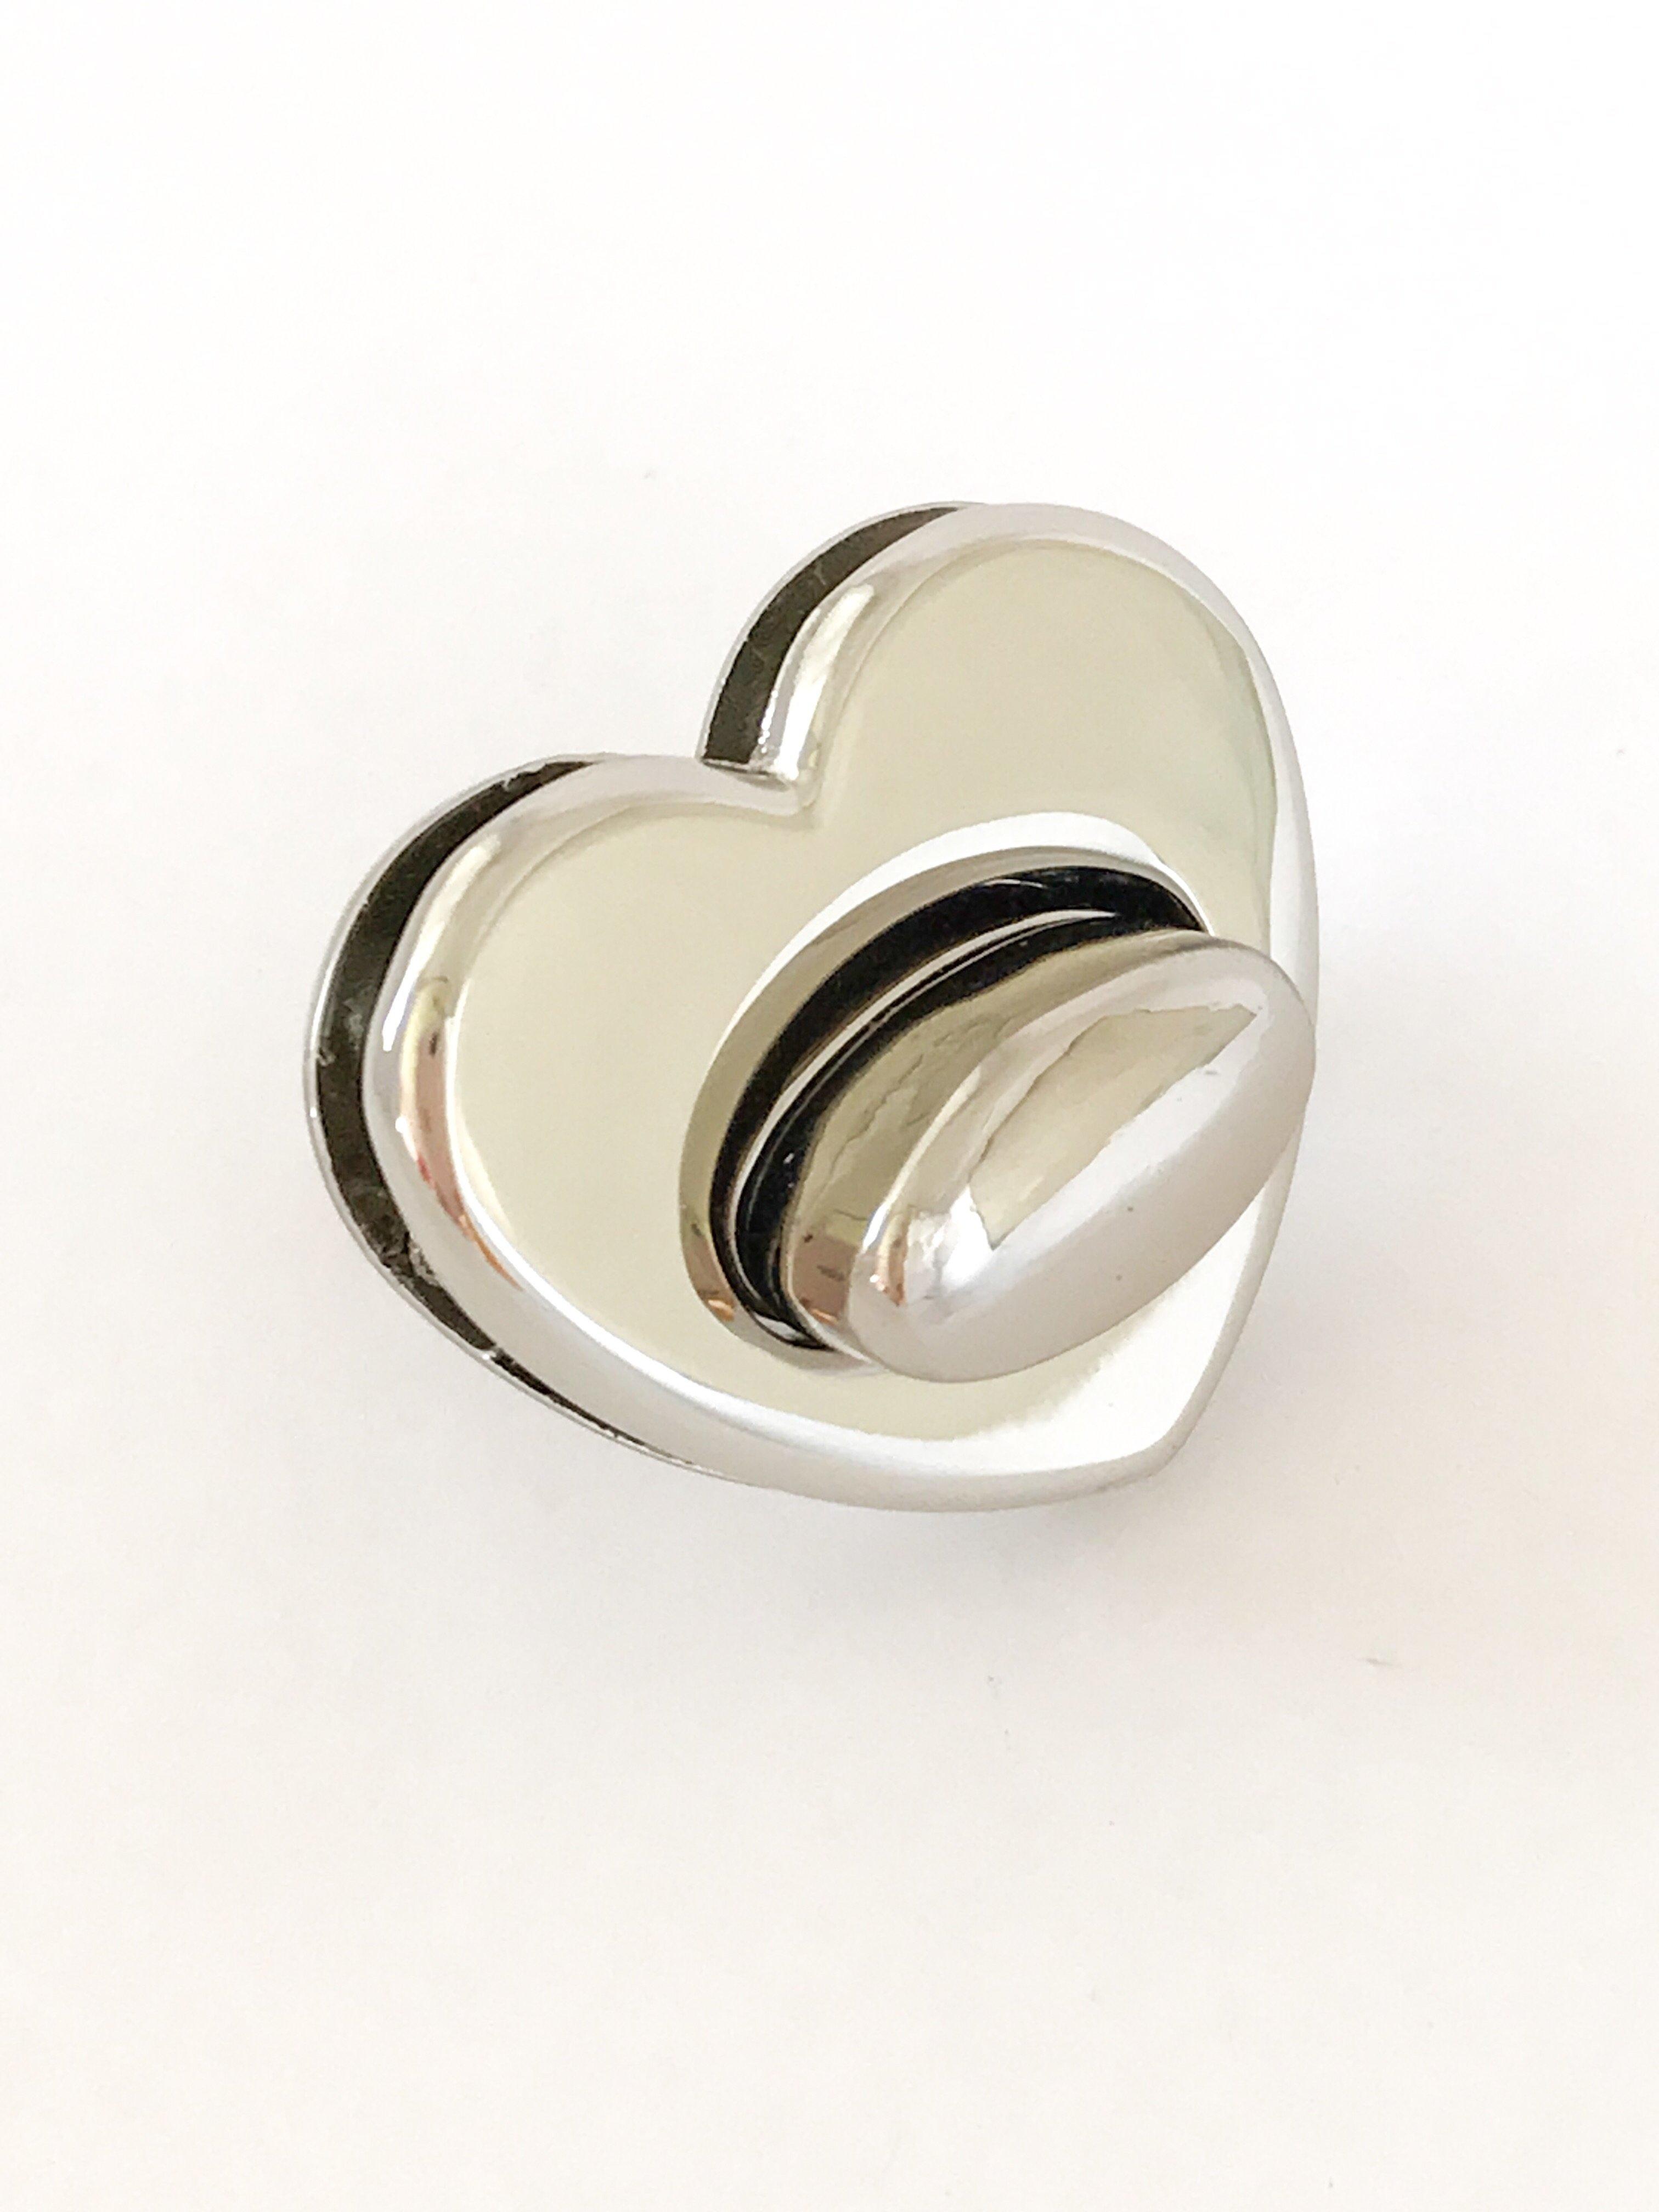 silver heart shaped twist lock